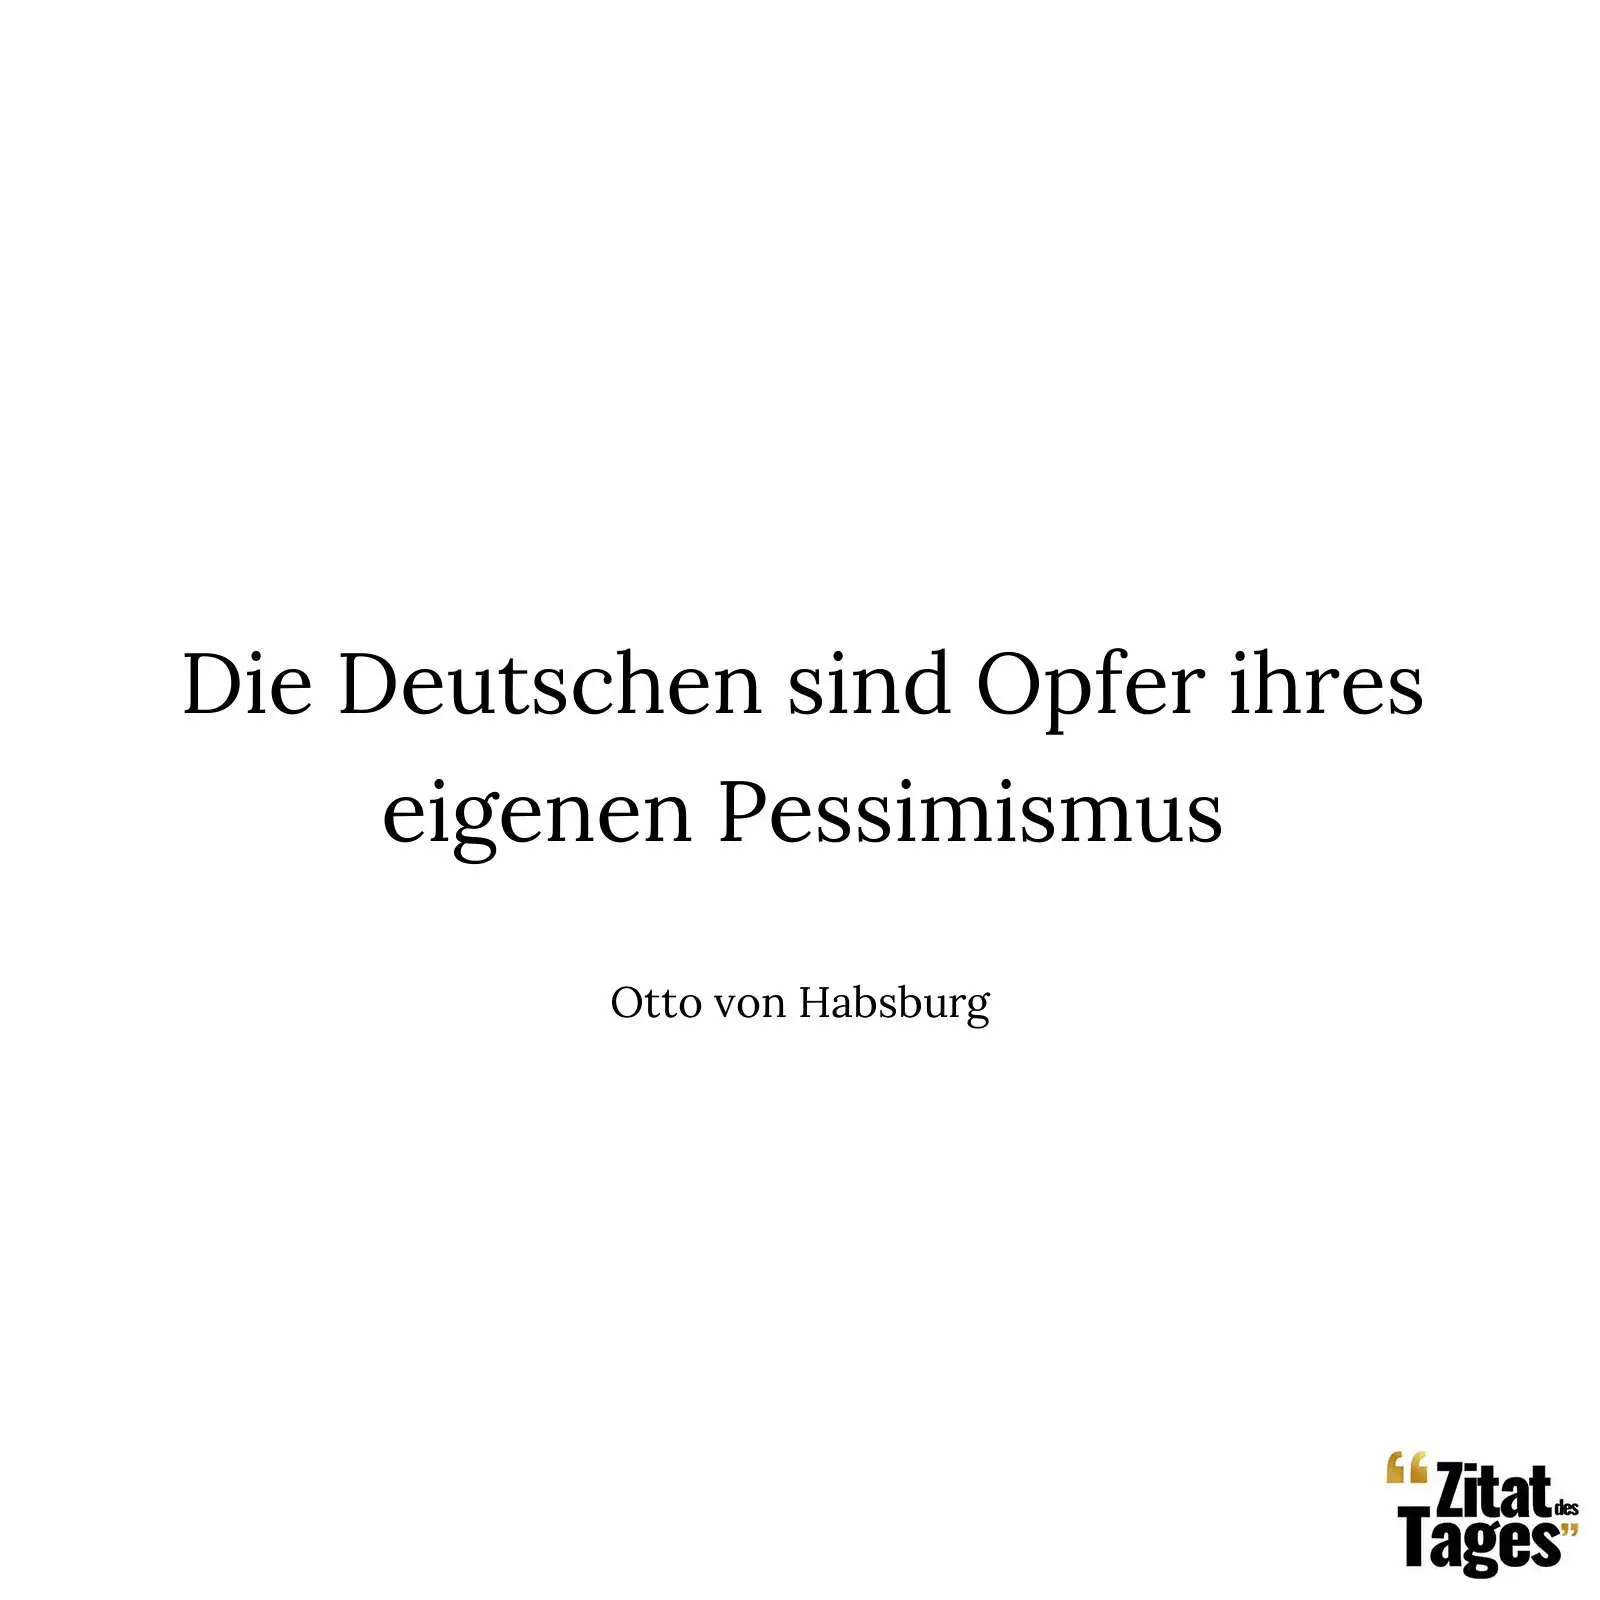 Die Deutschen sind Opfer ihres eigenen Pessimismus - Otto von Habsburg